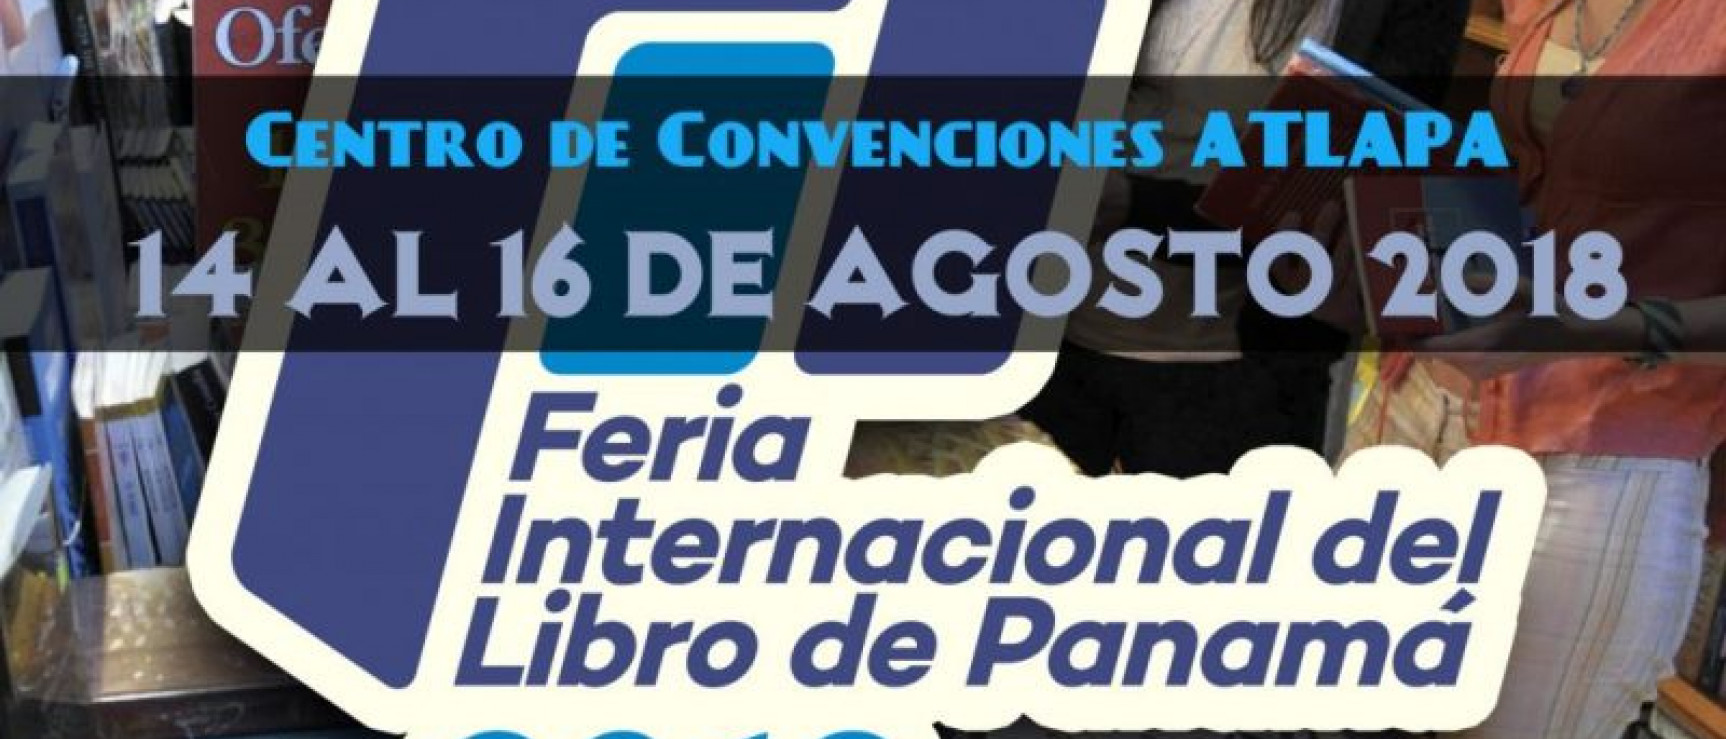 Feria Internacional del Libro de Panamá.